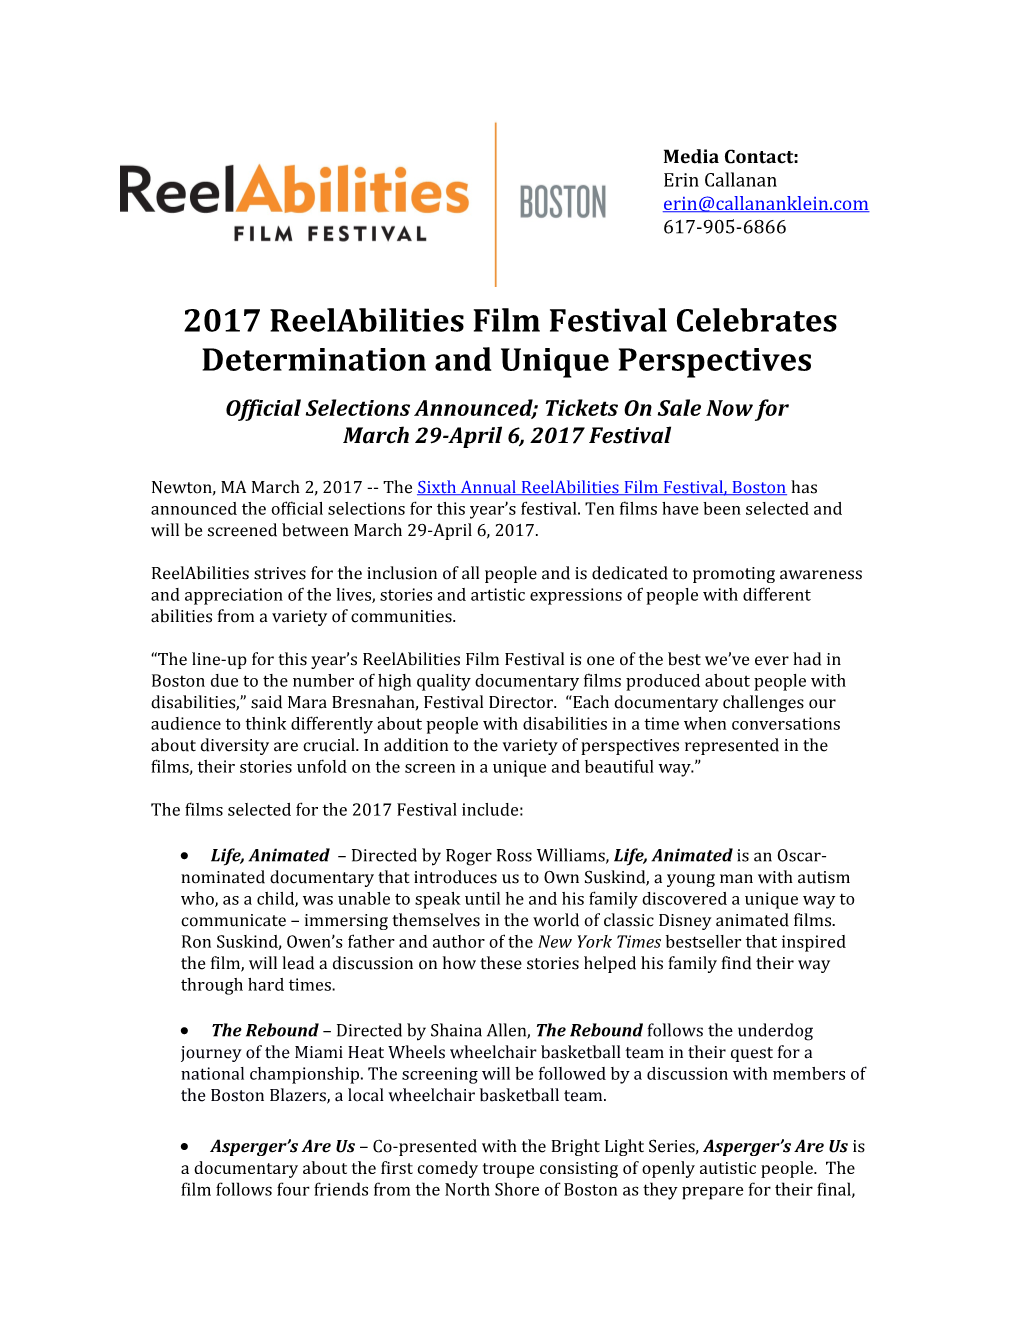 2017 Reelabilities Film Festival Celebrates Determination and Unique Perspectives